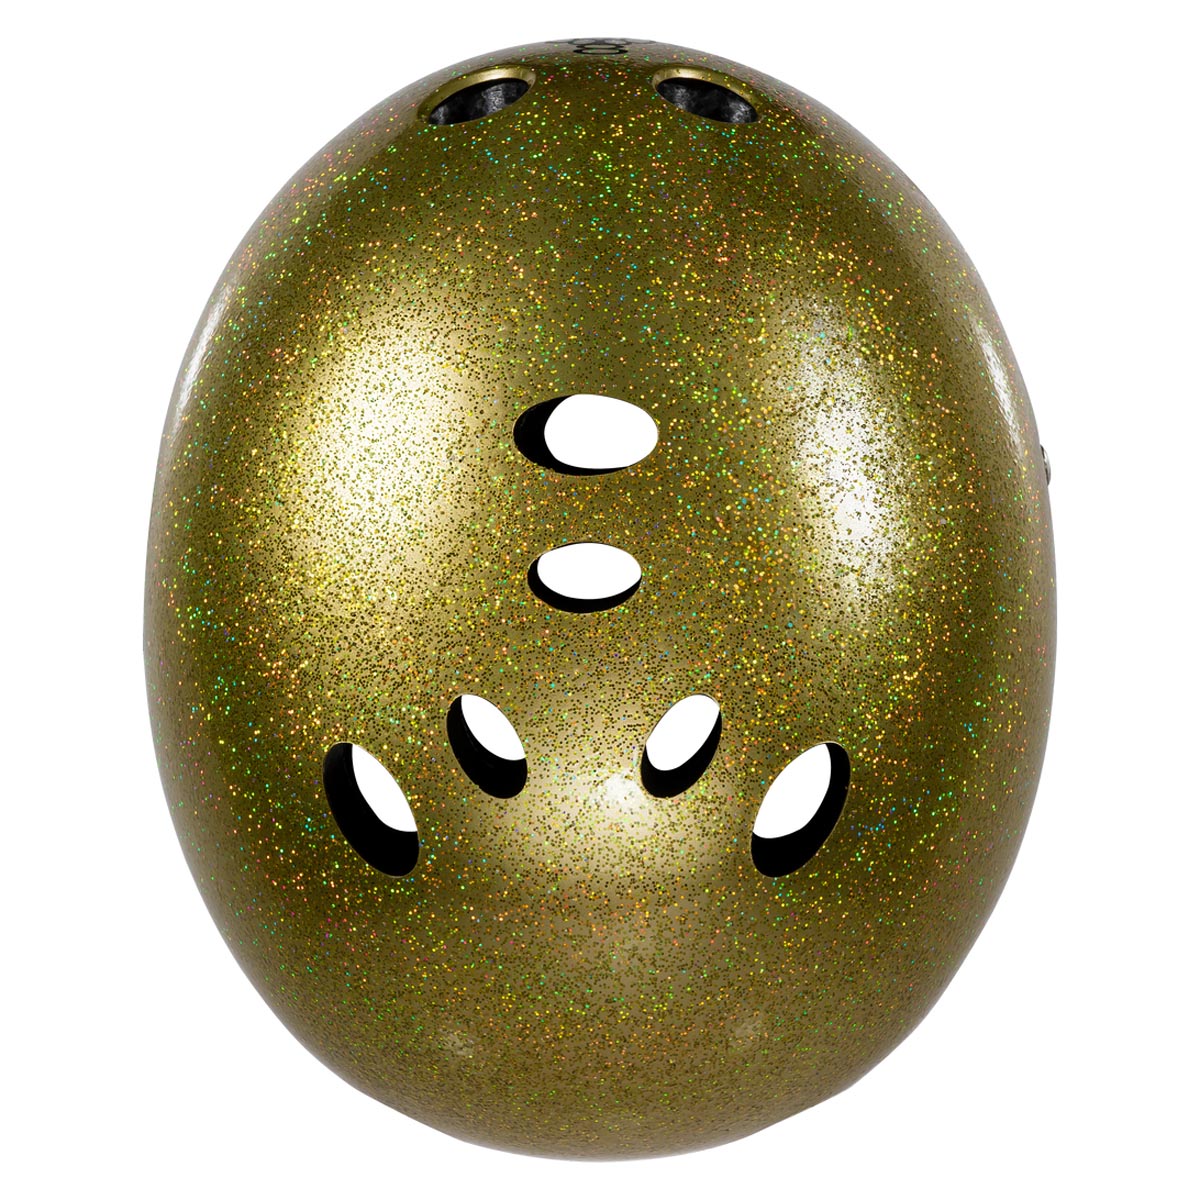 Triple Eight Certified Sweatsaver Helmet - Gold Glitter image 3